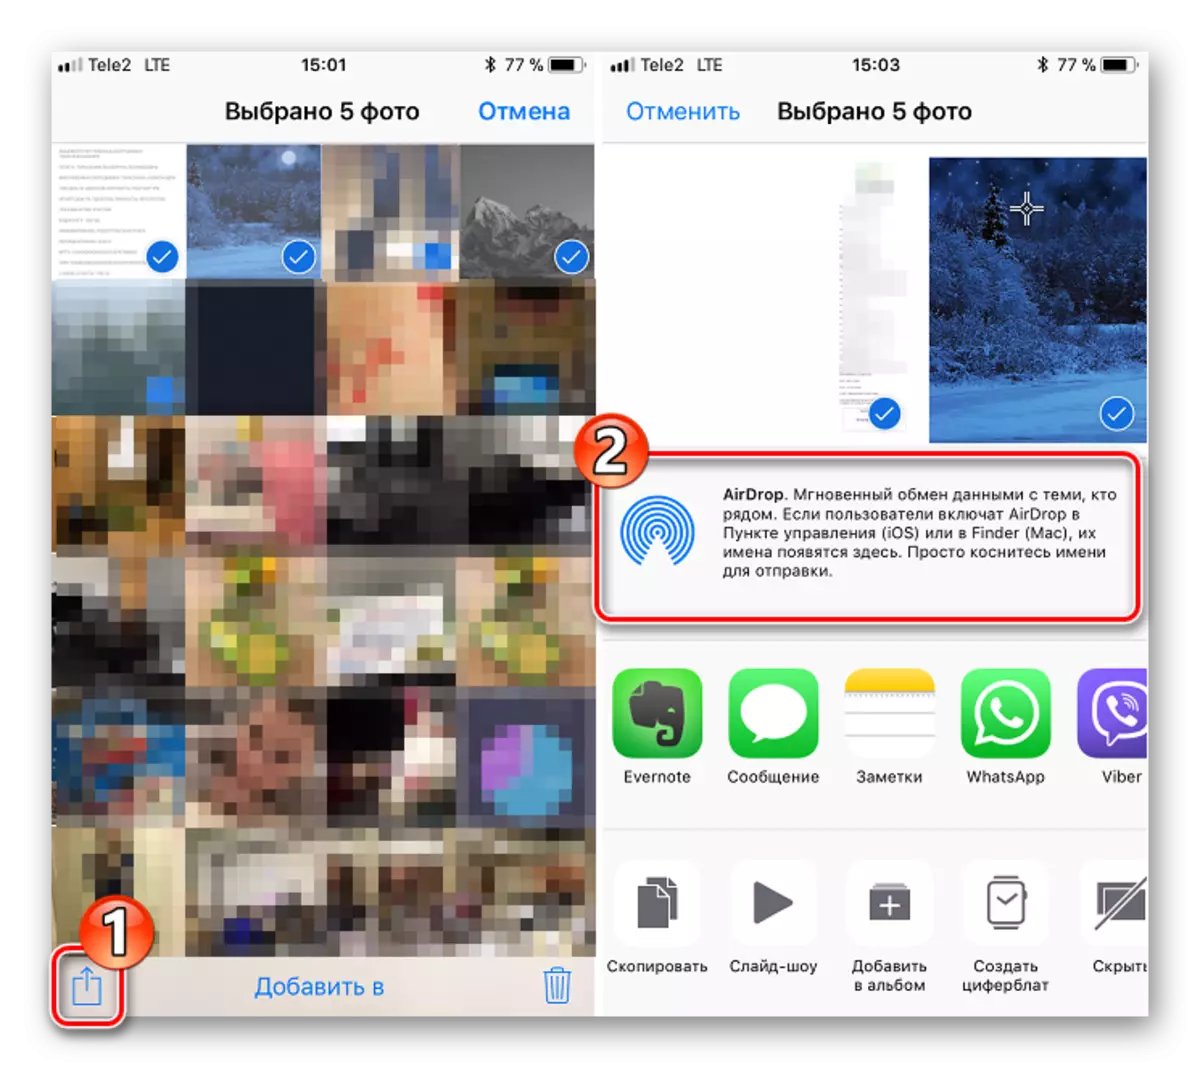 העברת תמונות מ IOS על iOS על ידי אייסרופ